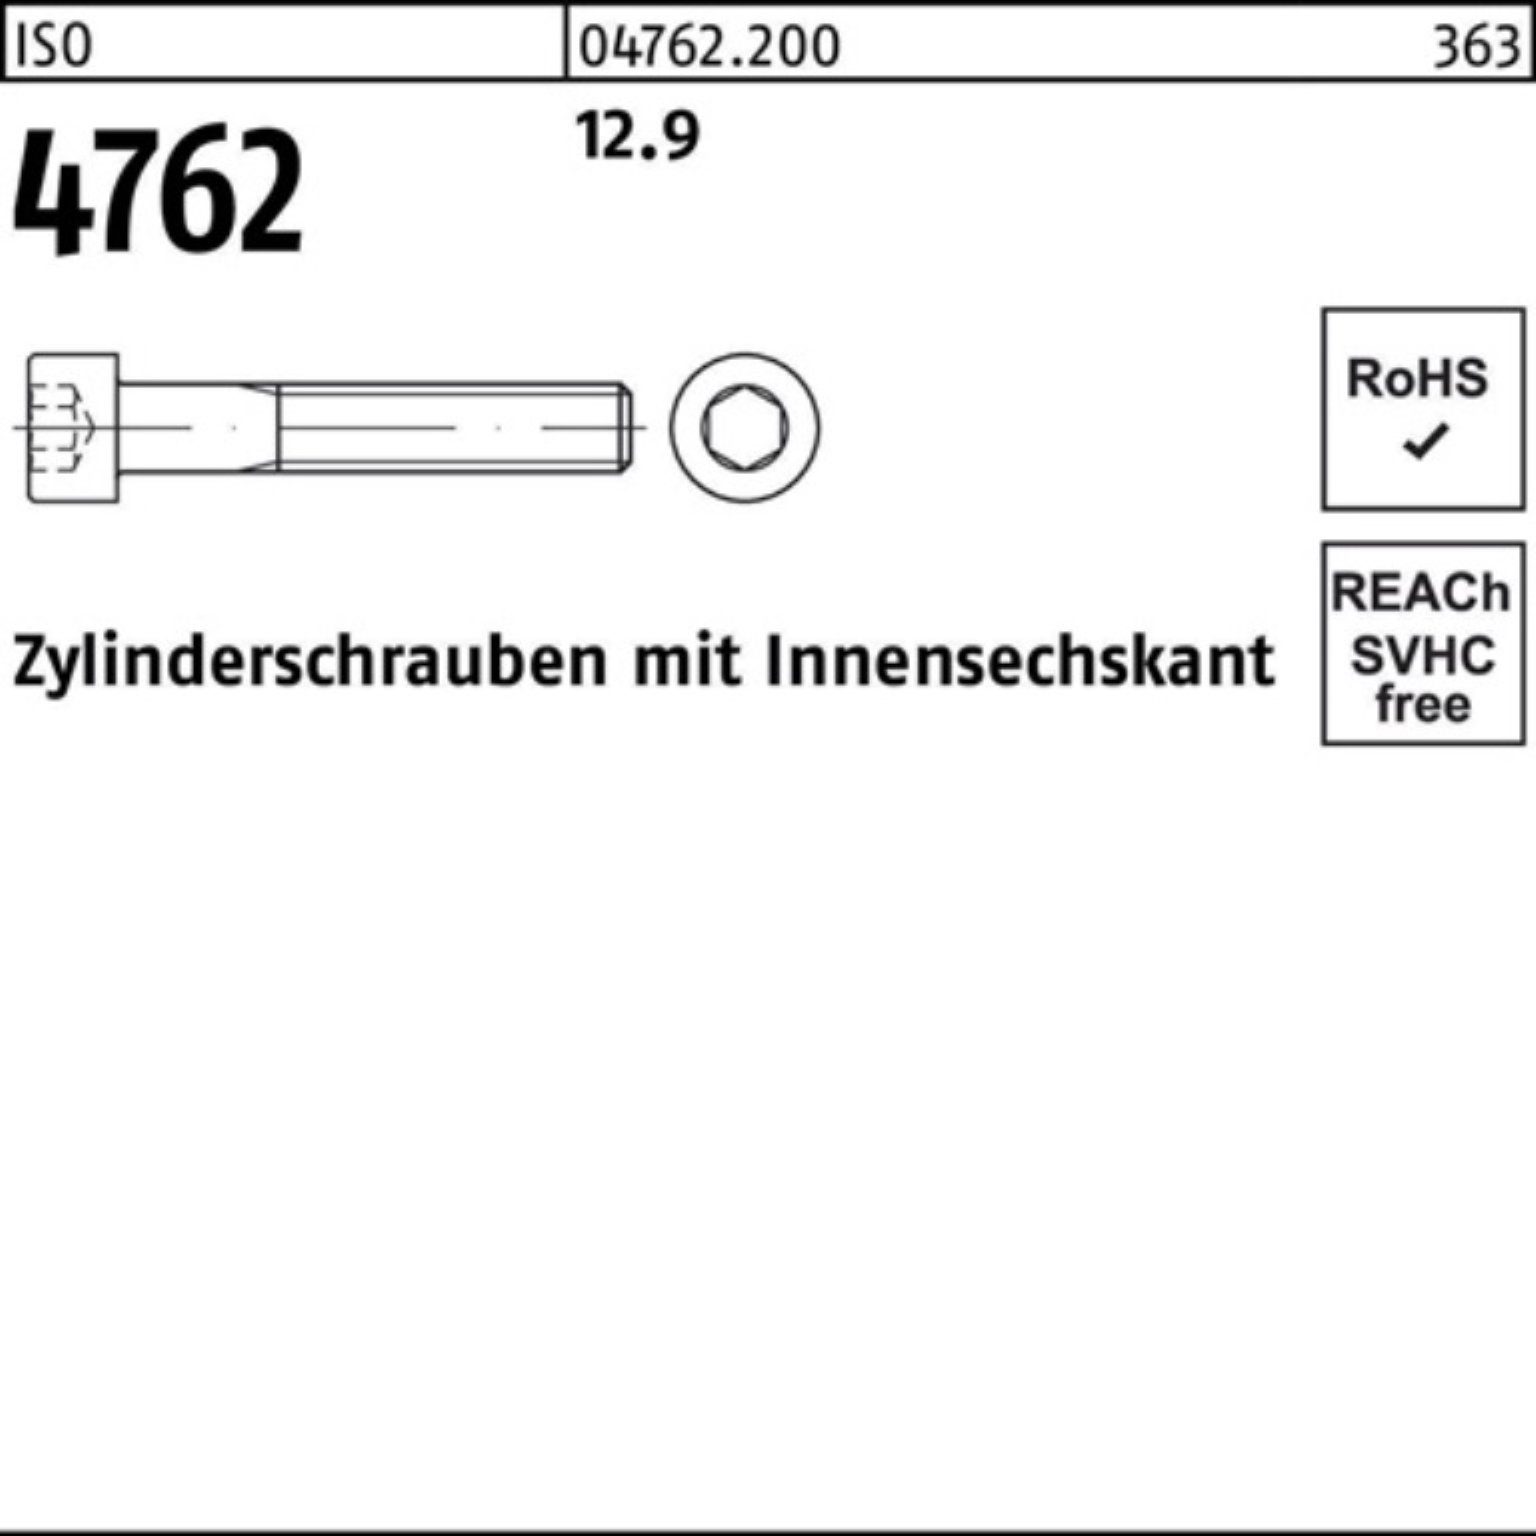 ISO Zylinderschraube 12 100er M4x Zylinderschraube Pack 4762 Stück Innen-6kt 12.9 Reyher 100